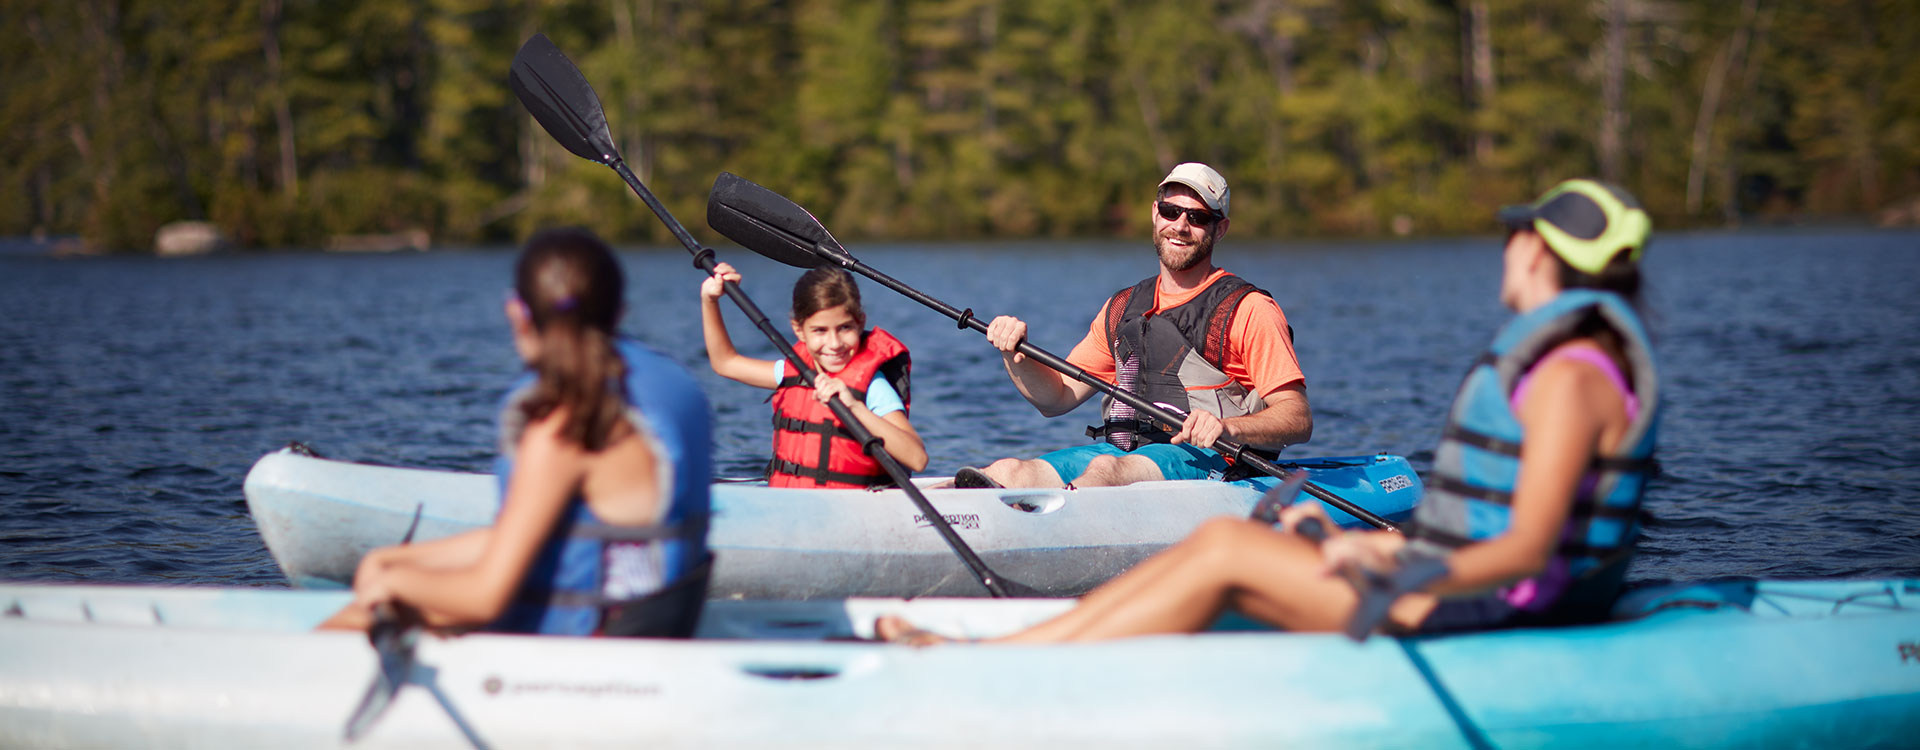 Family kayaking on pawtuckaway lake